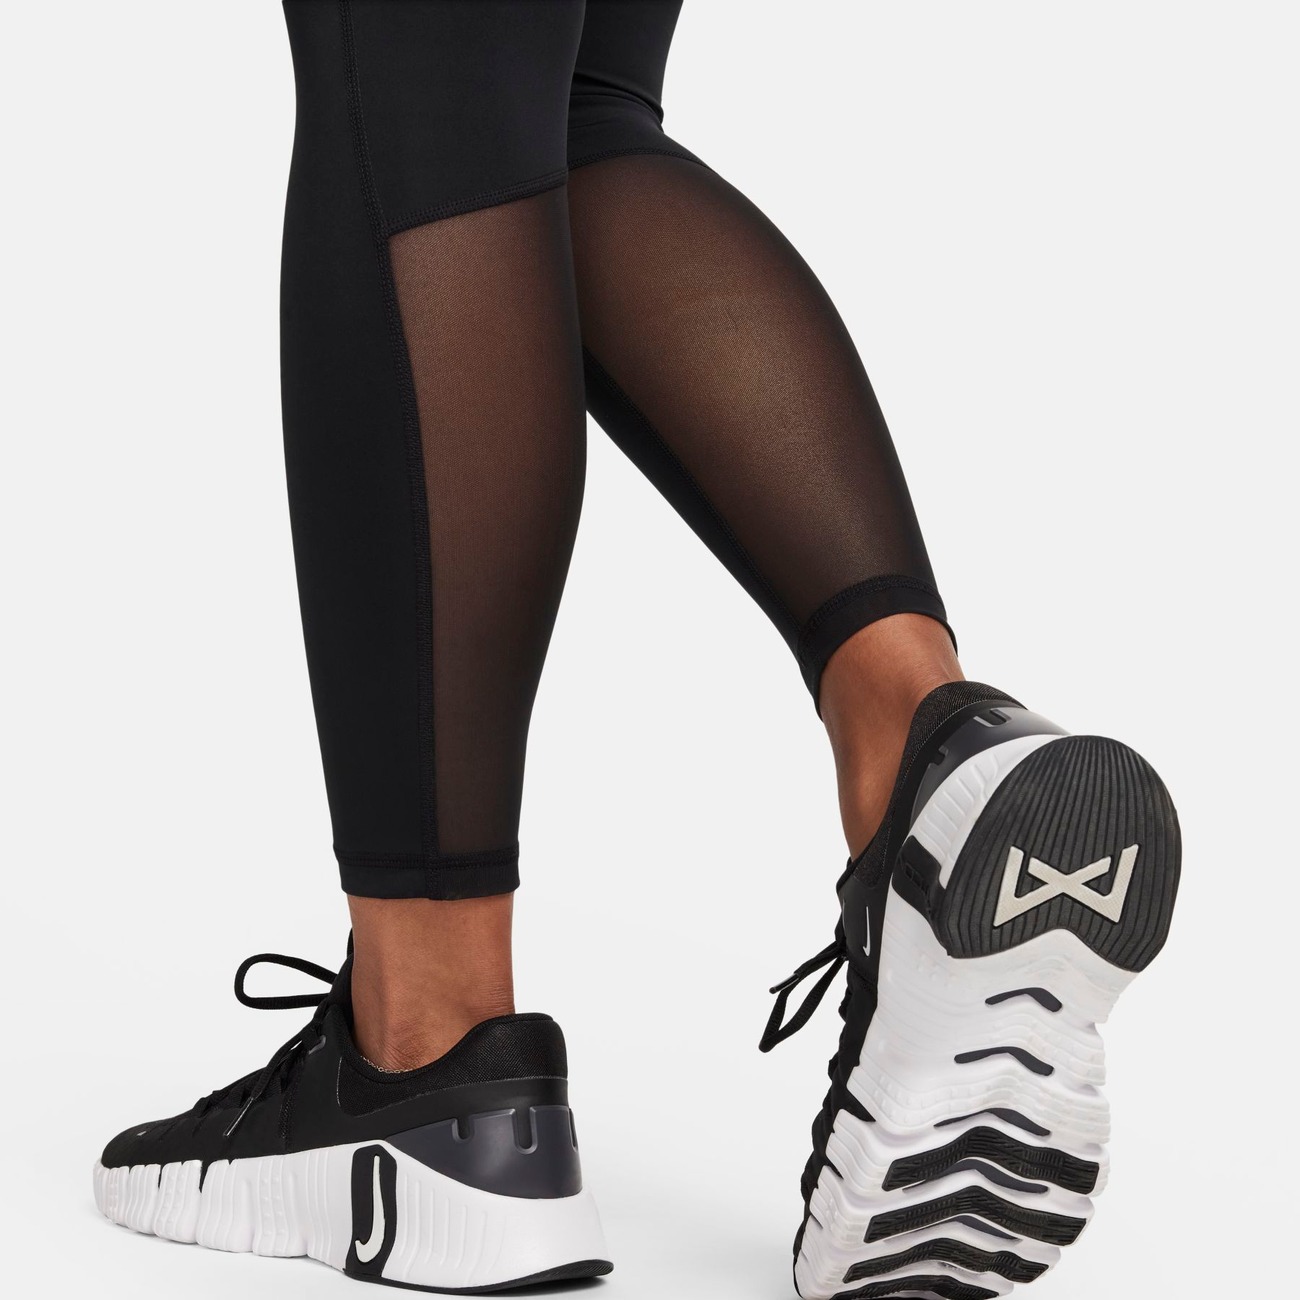 Legging Nike Pro 365 para mulher